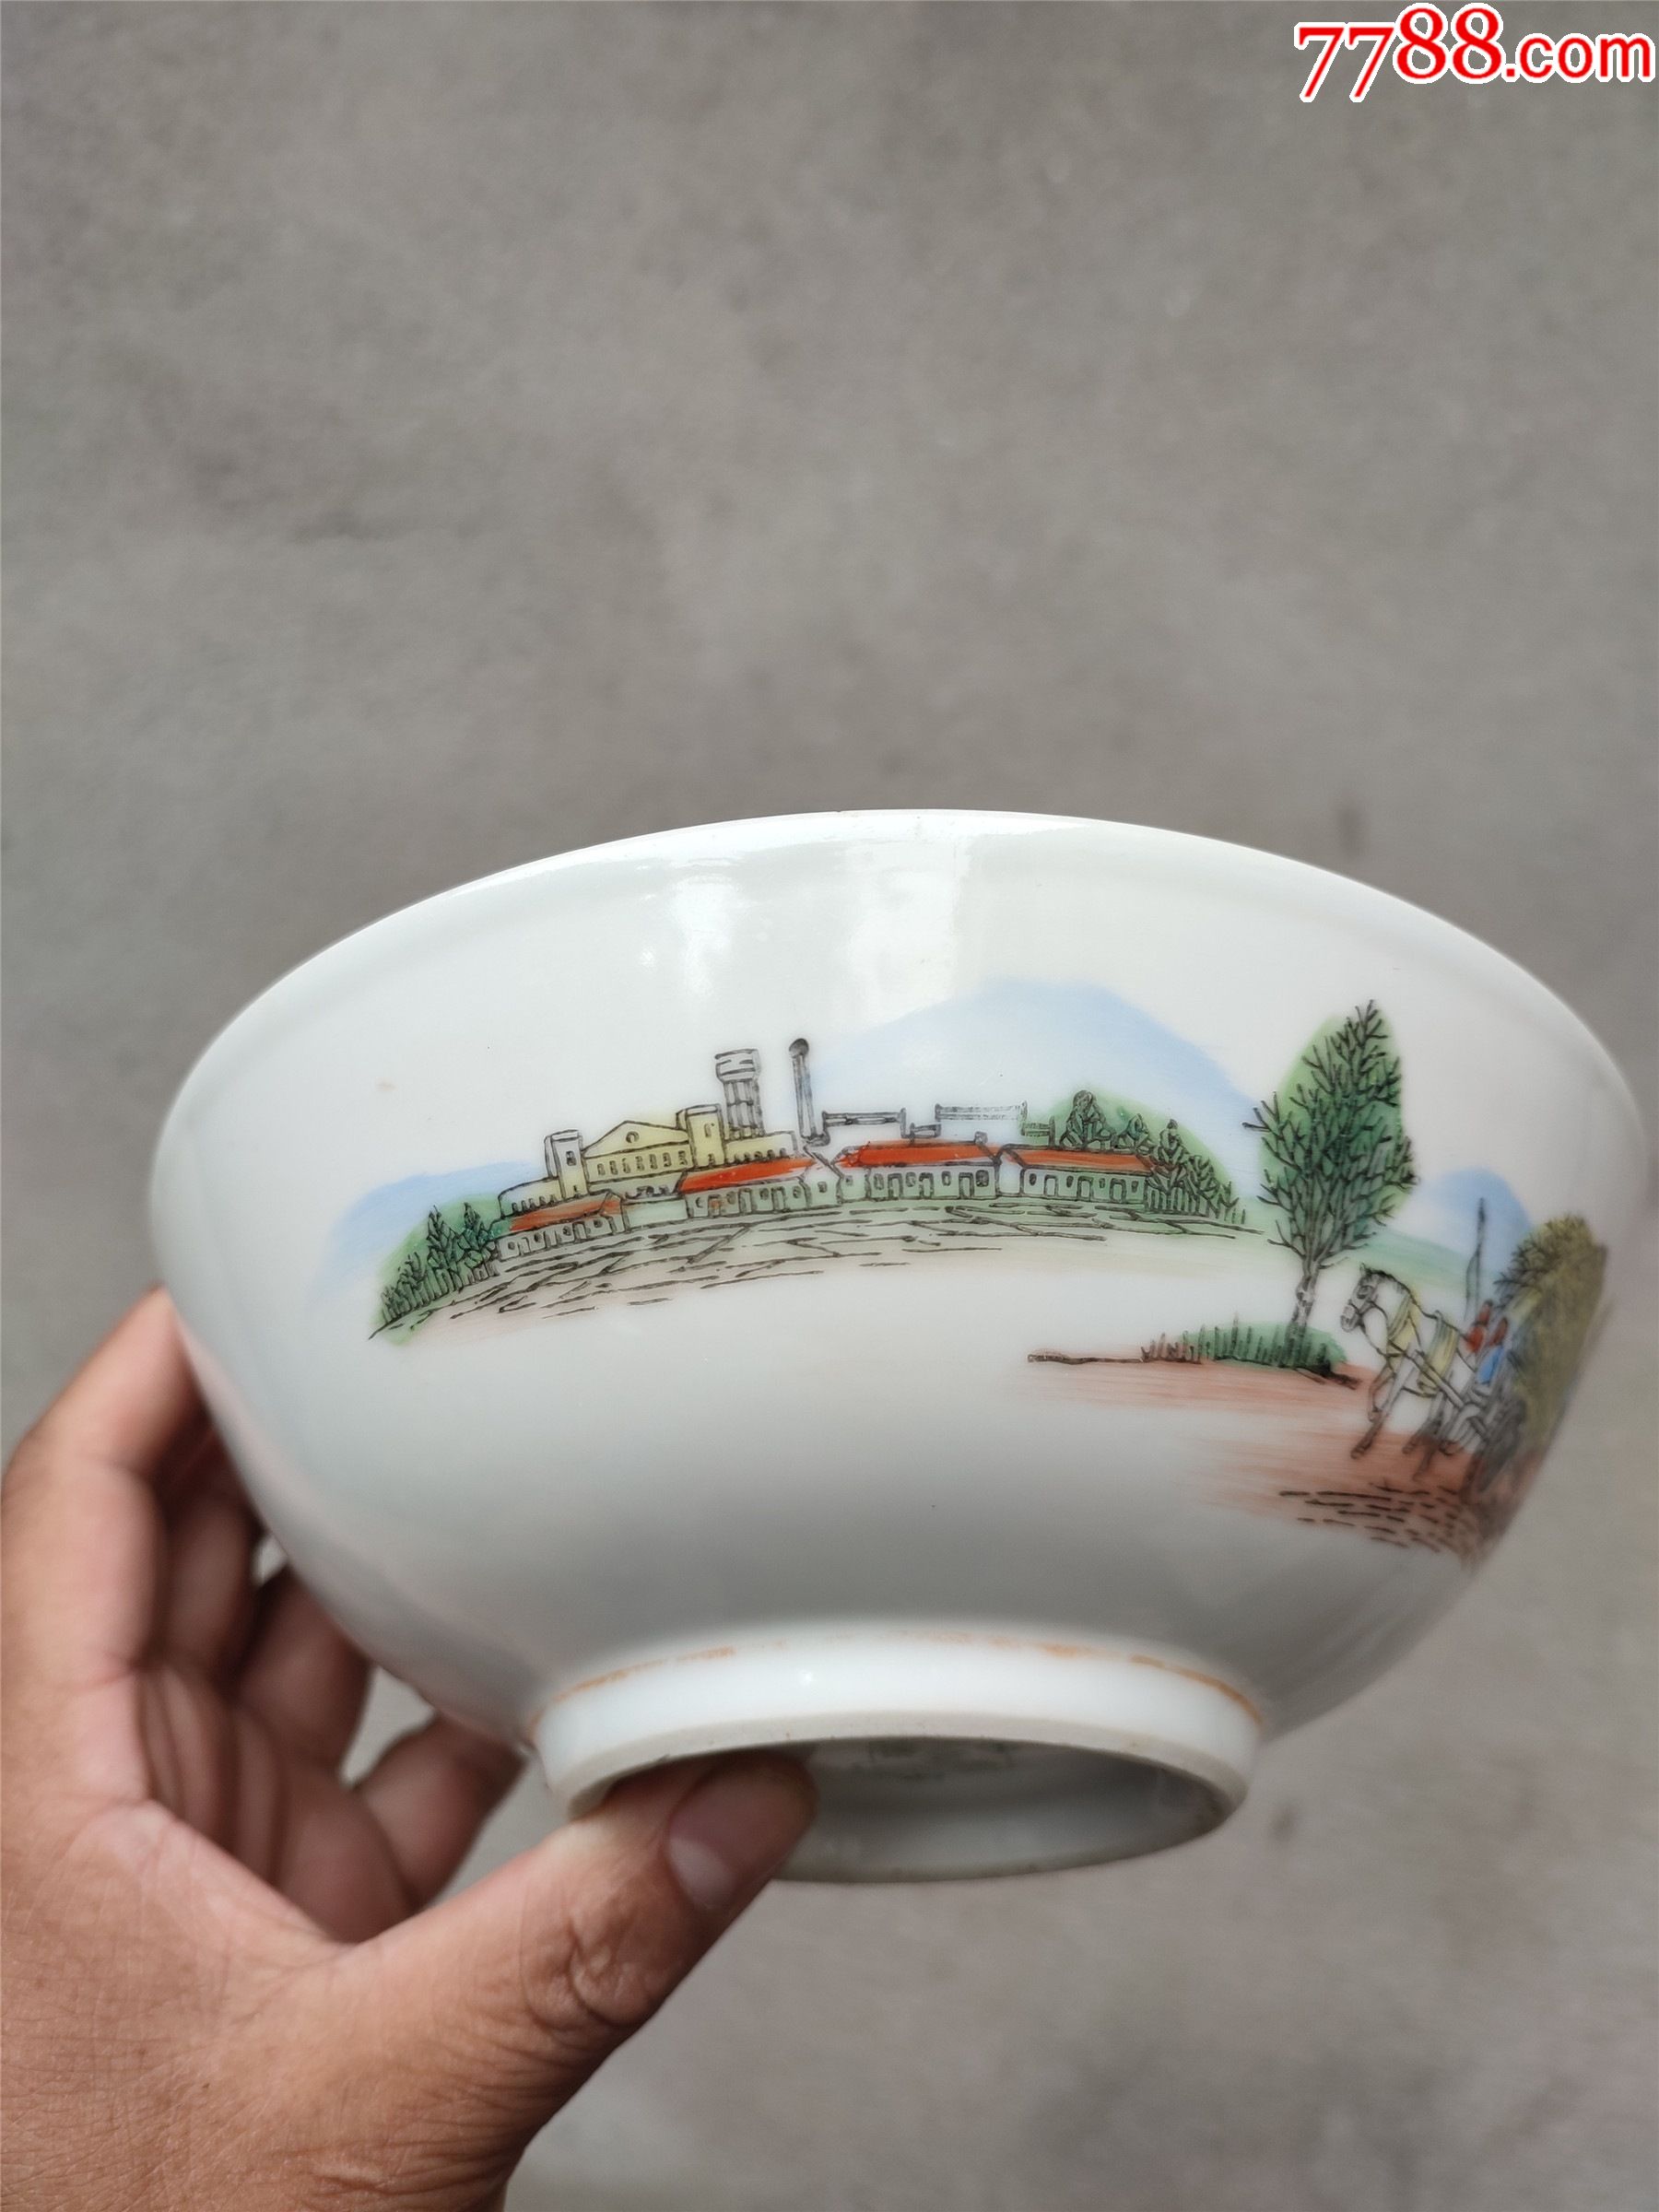 六七十年代的瓷器碗,口径17厘米,有一个小磕,没有冲线